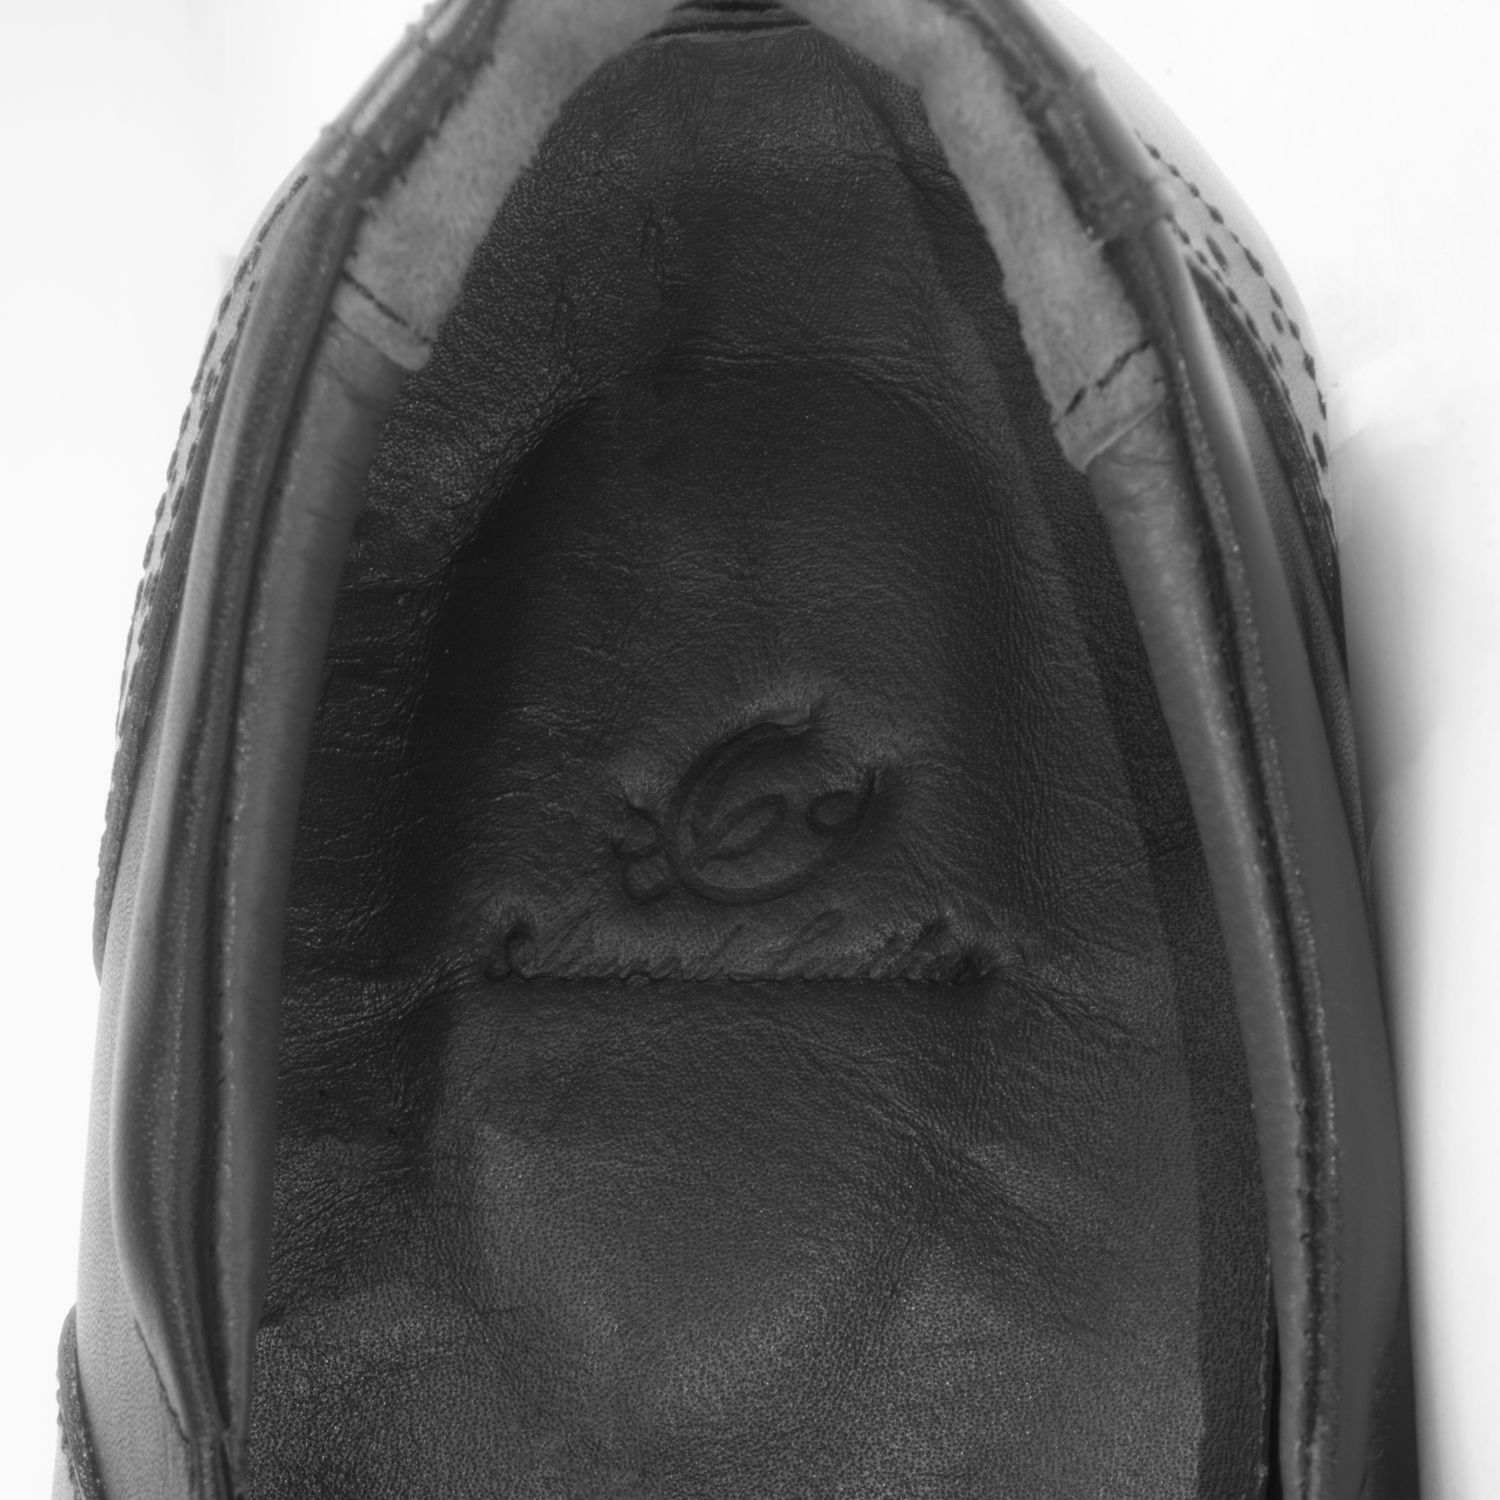 کفش روزمره مردانه چرم عطارد مدل چرم طبیعی کد SH61 -  - 3